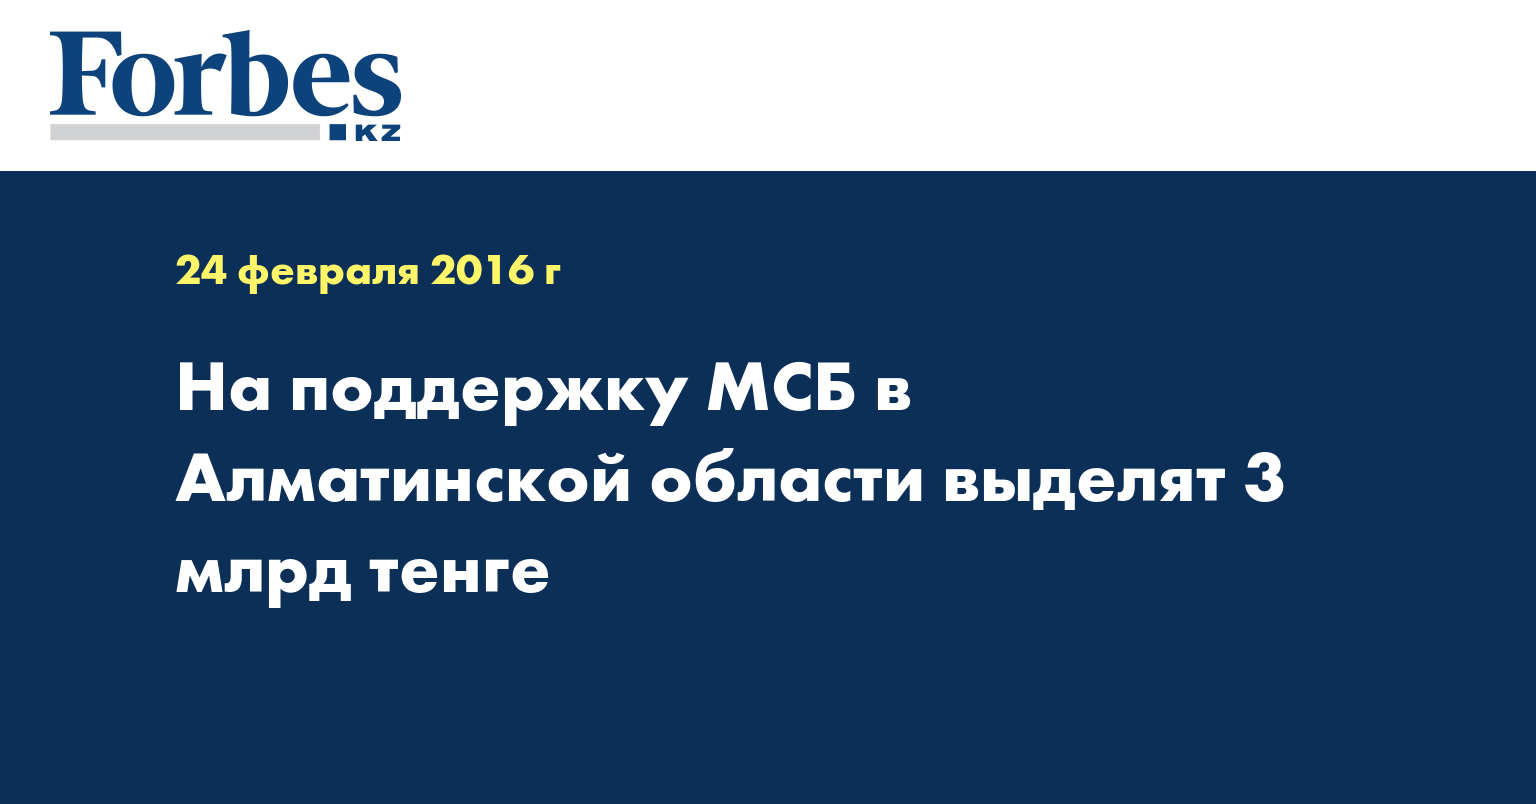 На поддержку МСБ в Алматинской области выделят 3 млрд тенге 